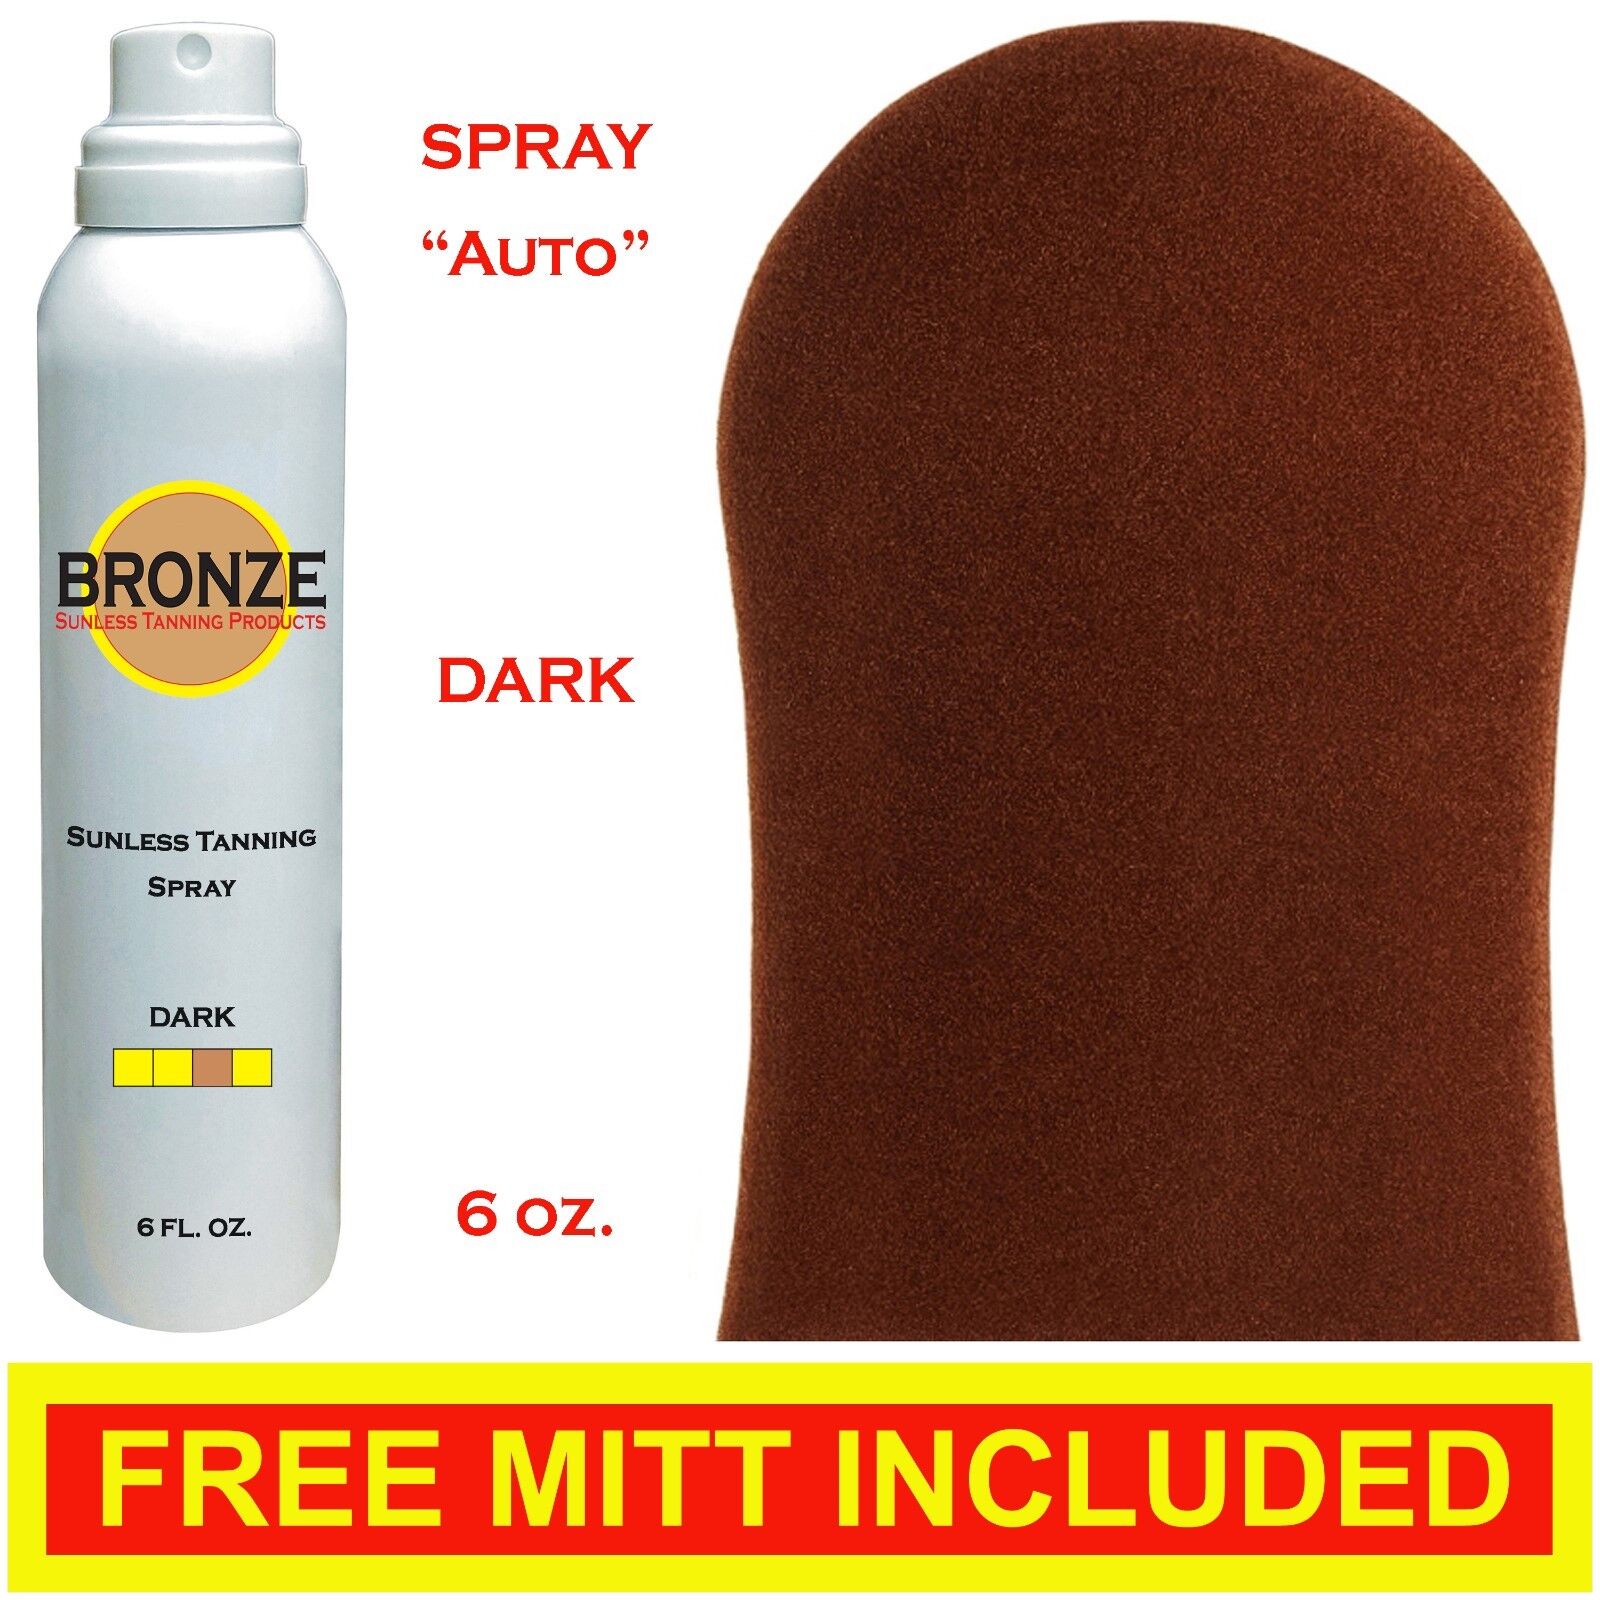 BRONZE - Sunless Self Tanning 2021 spring and summer new Spray + 1 year warranty Best DARK 6 oz 